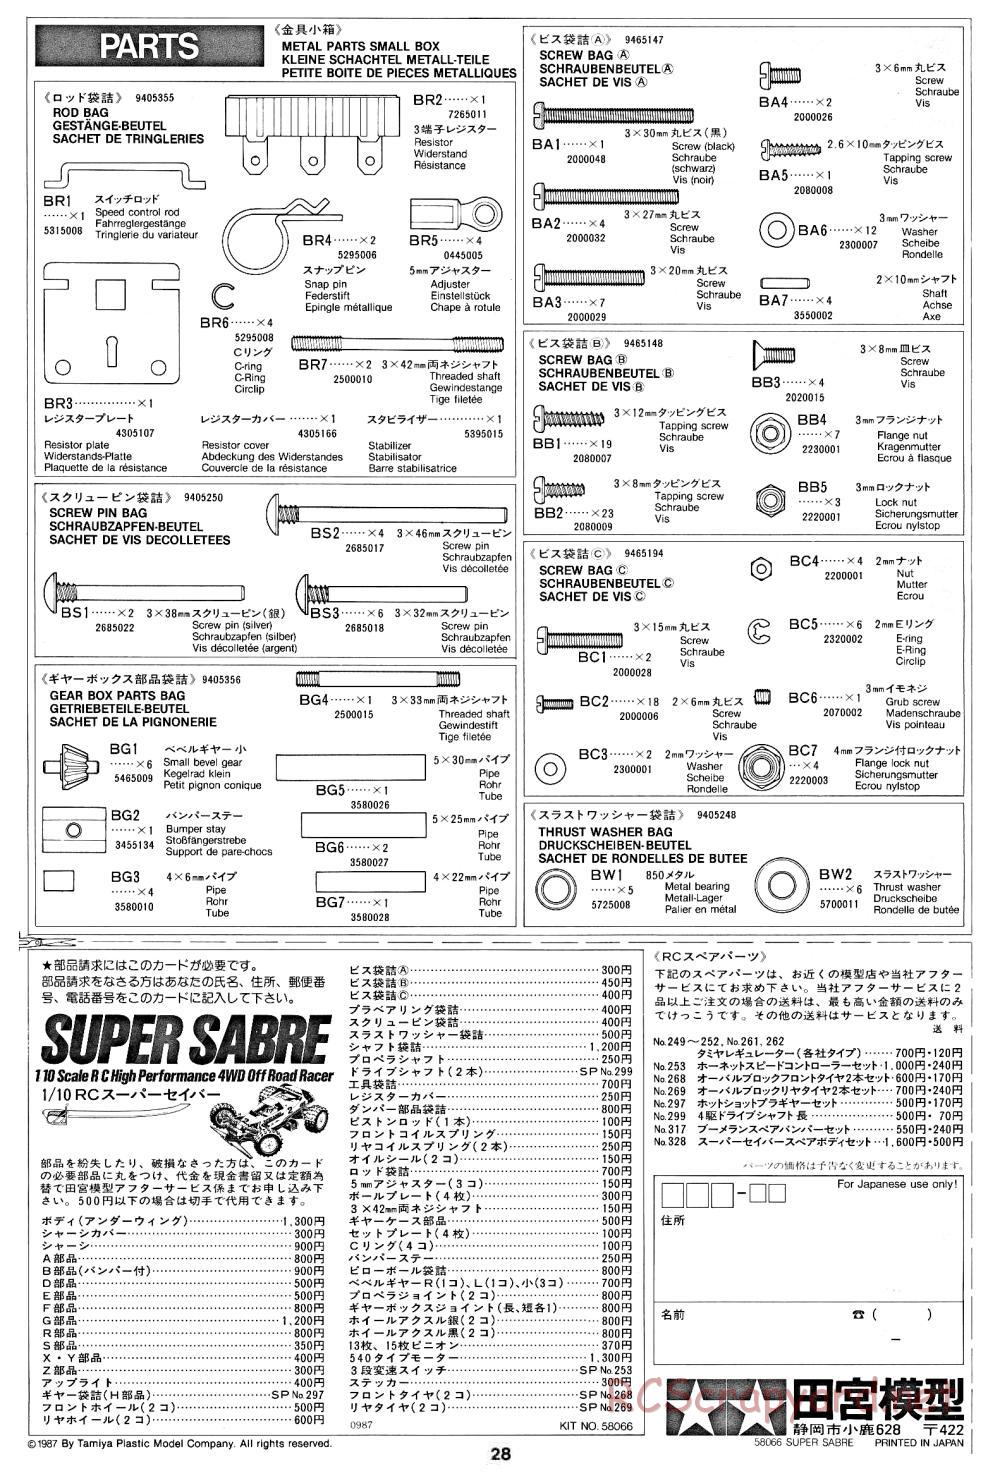 Tamiya - Super Sabre - 58066 - Manual - Page 28